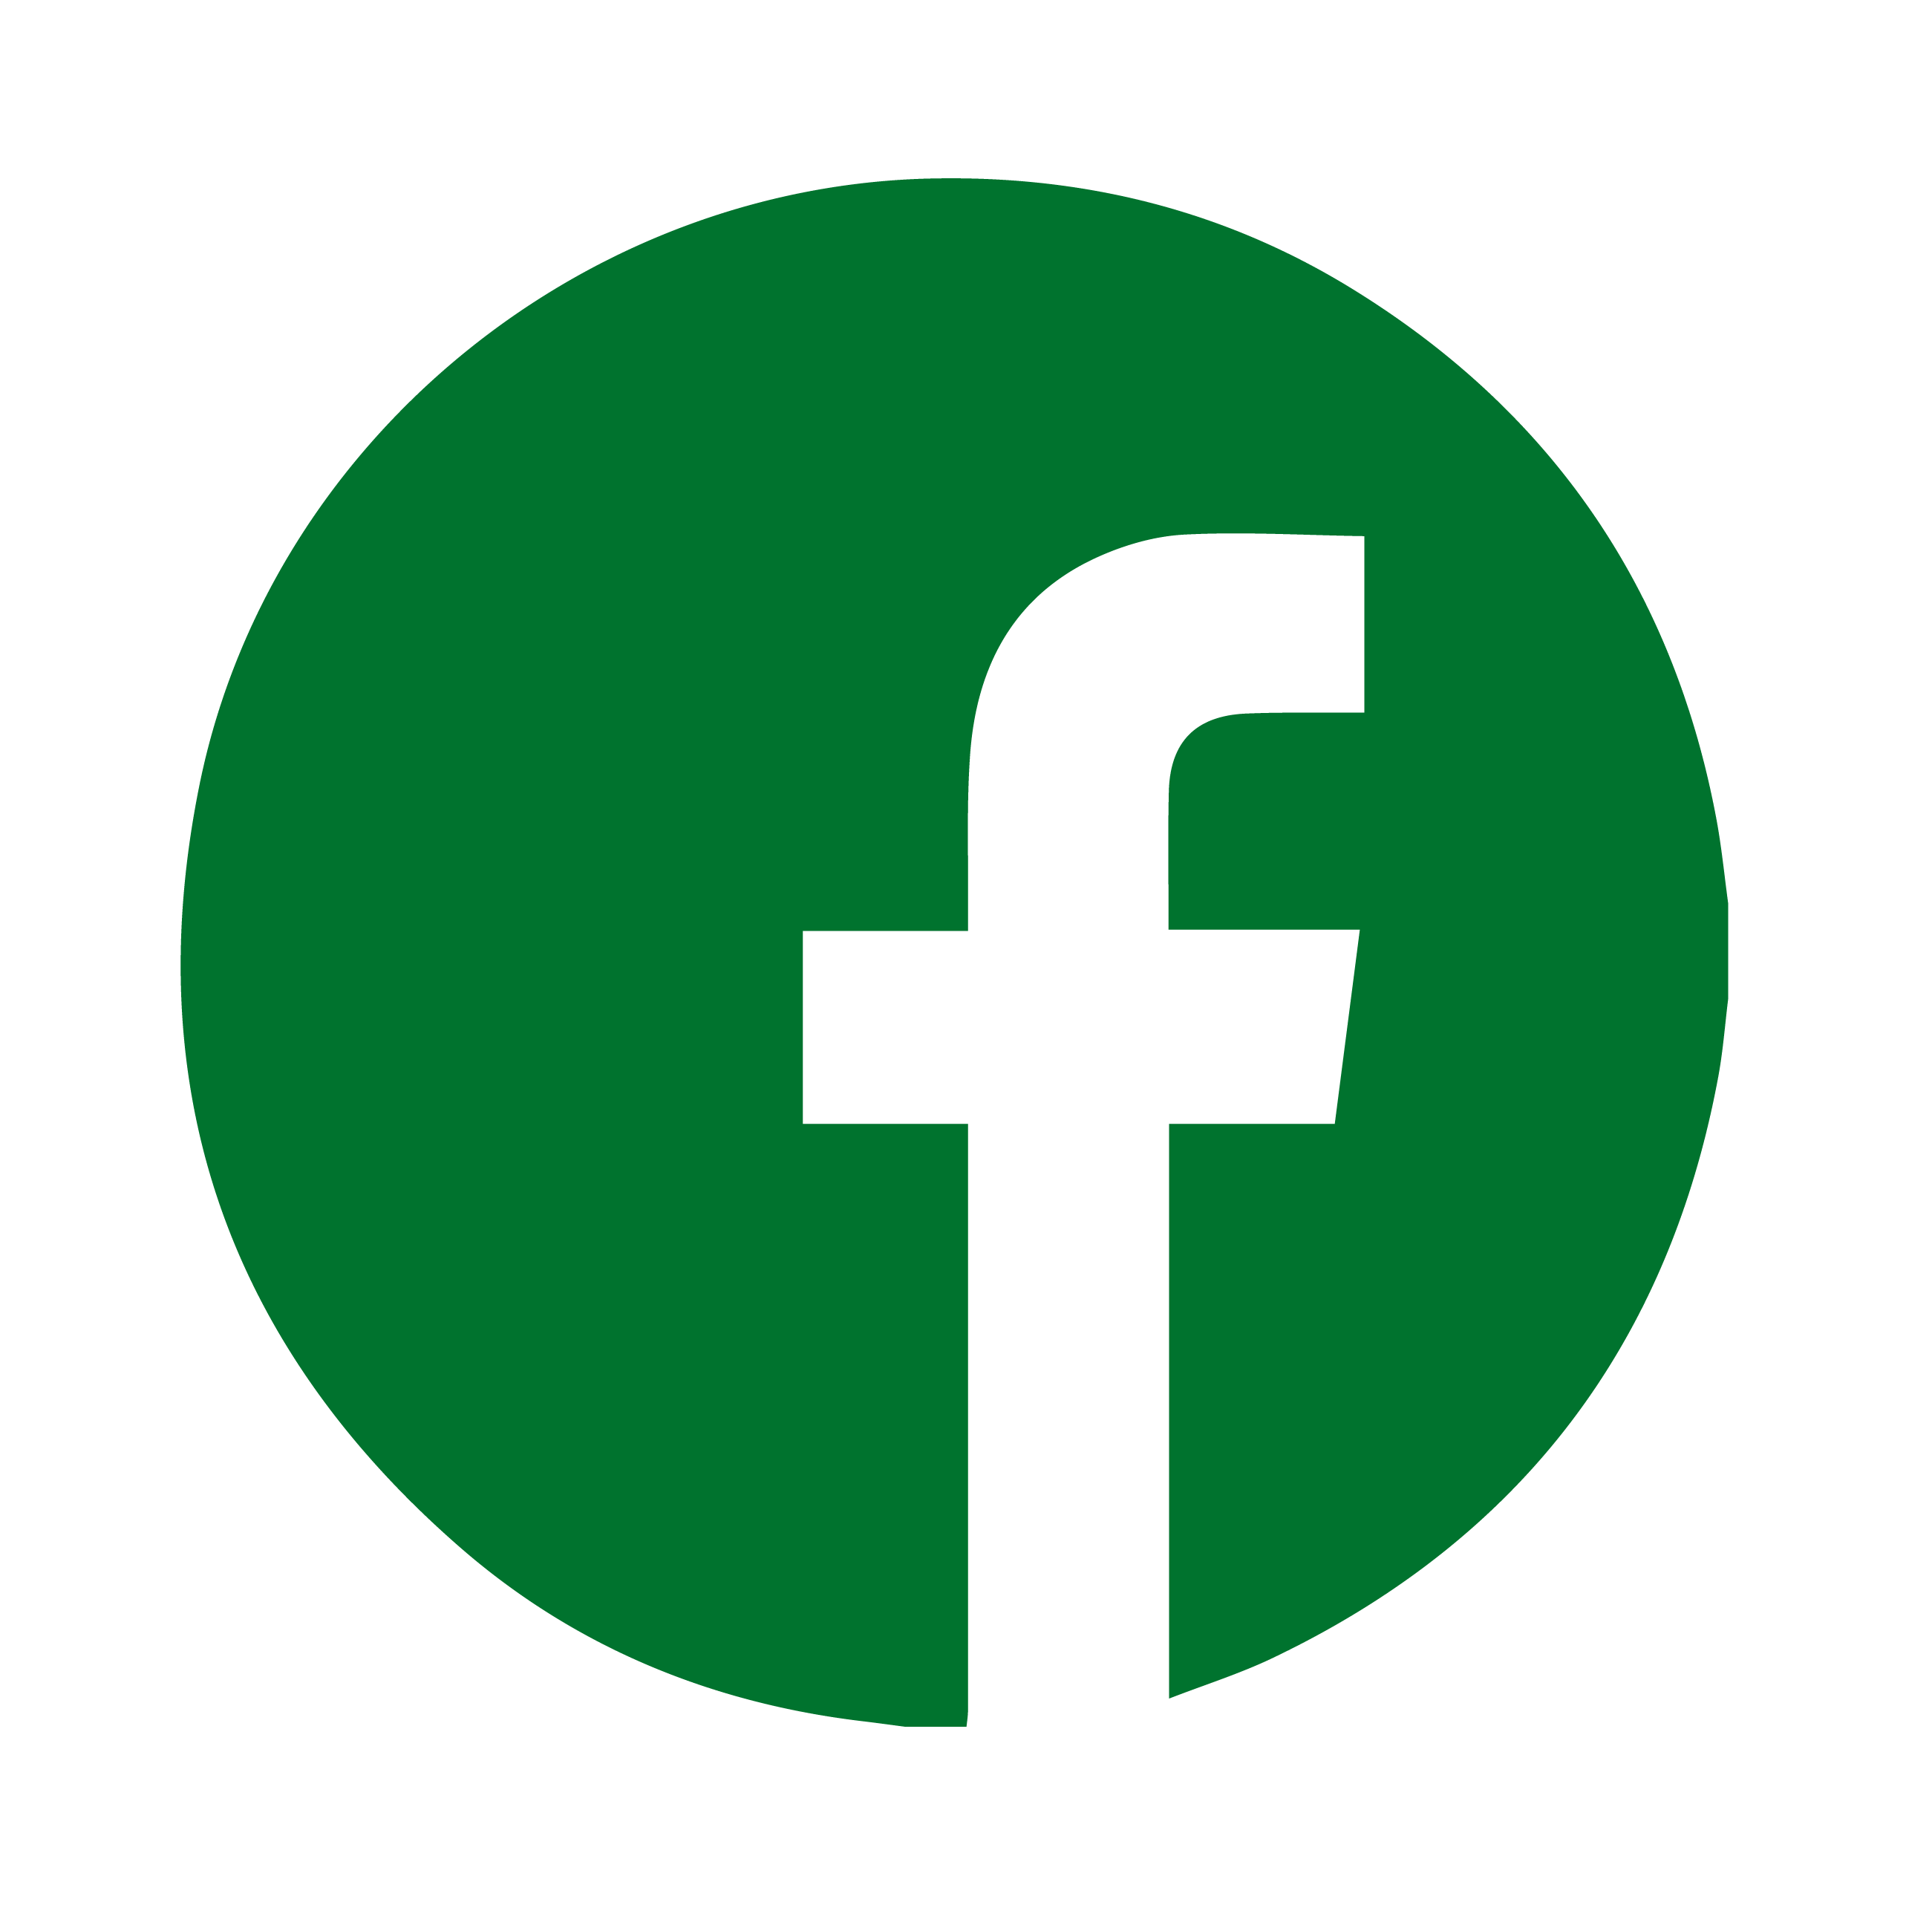 Green Facebook logo